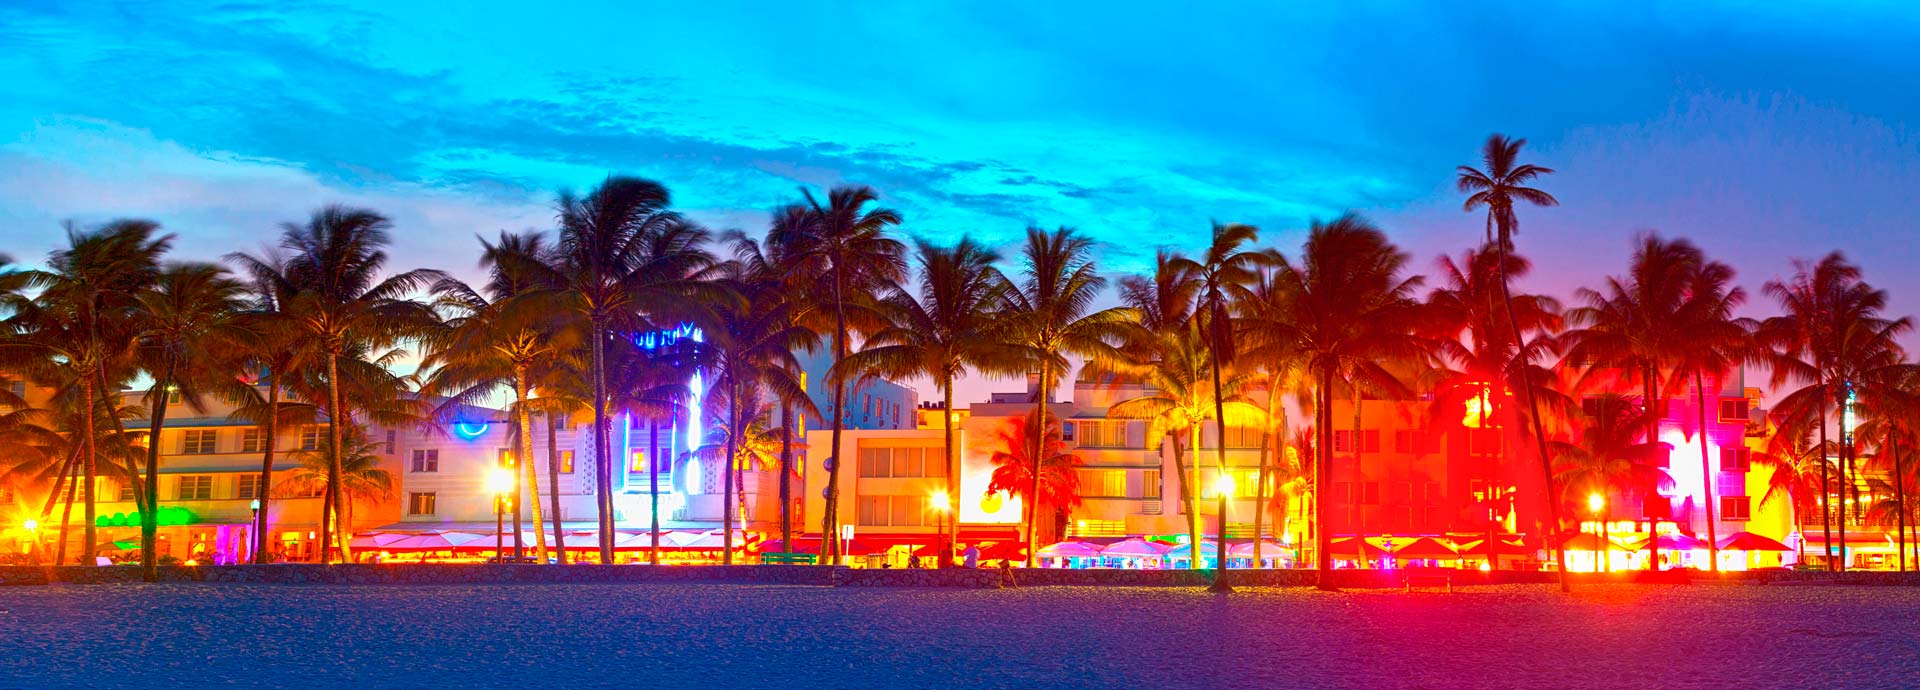 Alquiler de Carros en Miami | RentingCarz Colombia